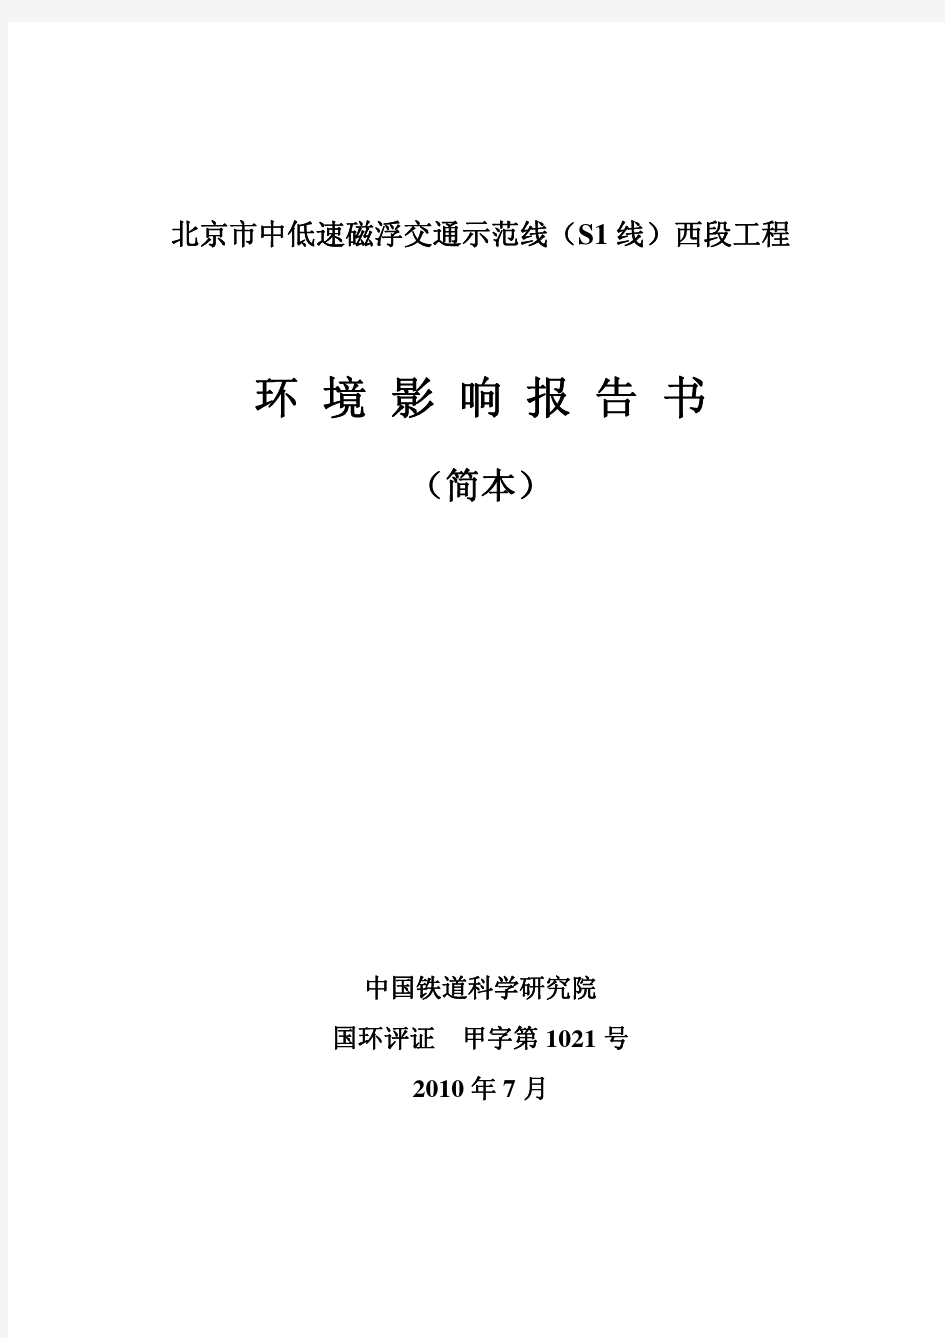 北京市中低速磁浮交通示范线(S1 线)西段工程环境影响报告书(简本)